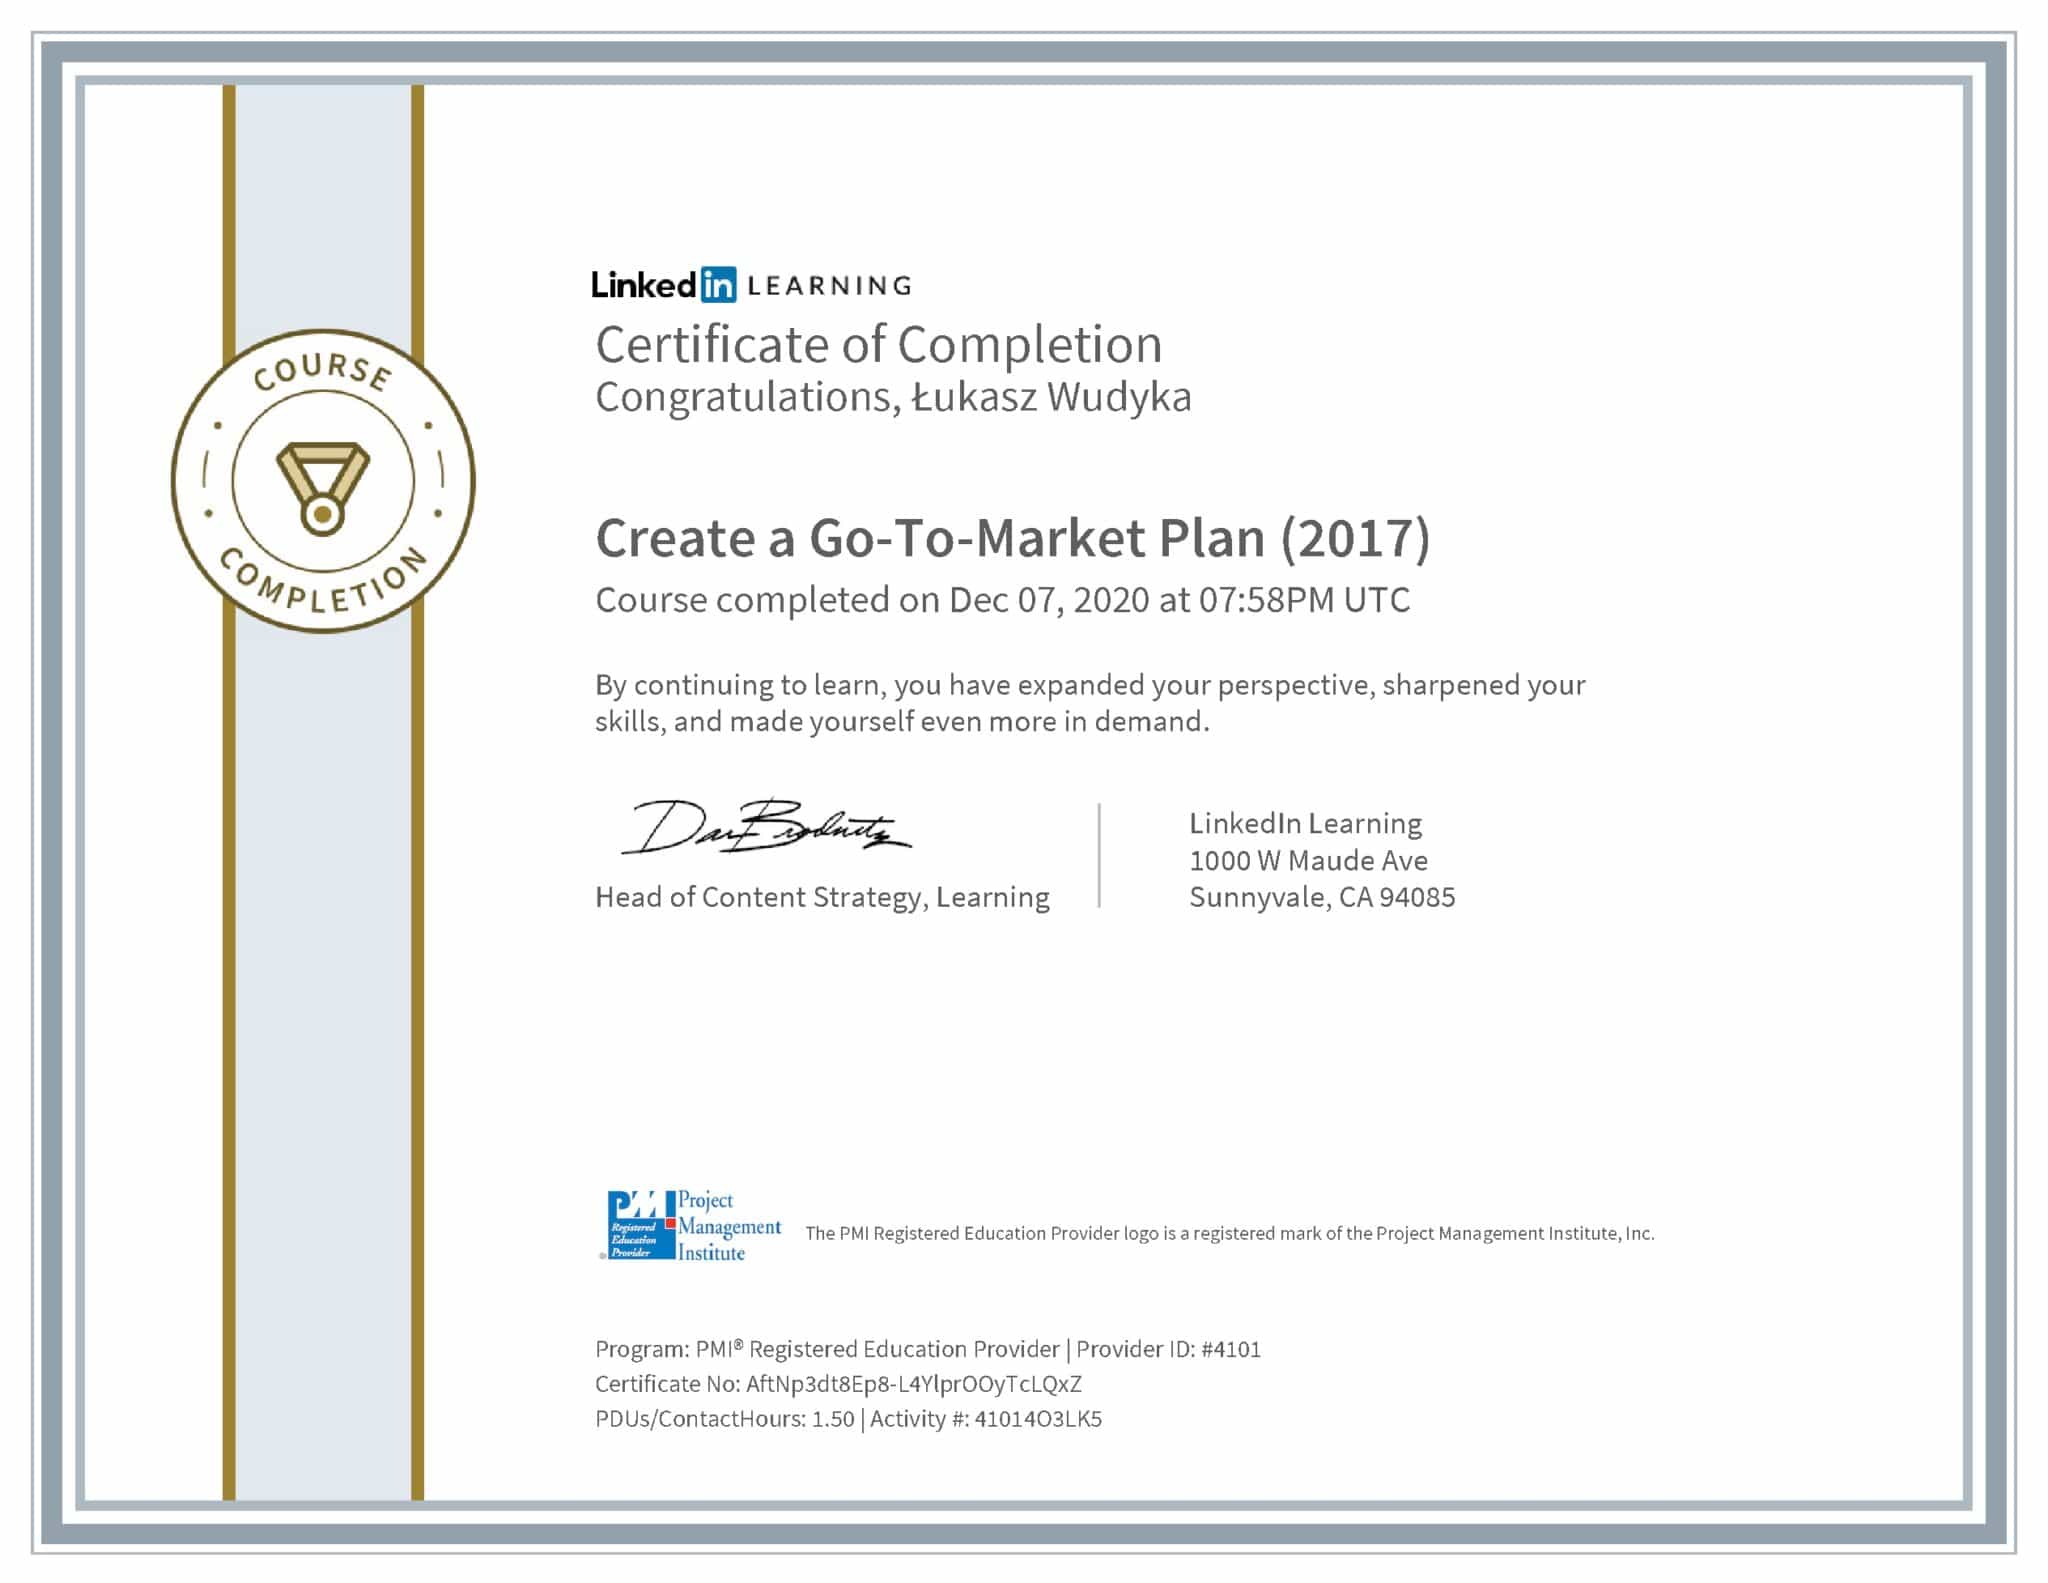 Łukasz Wudyka certyfikat LinkedIn Create a Go-To-Market Plan (2017) PMI